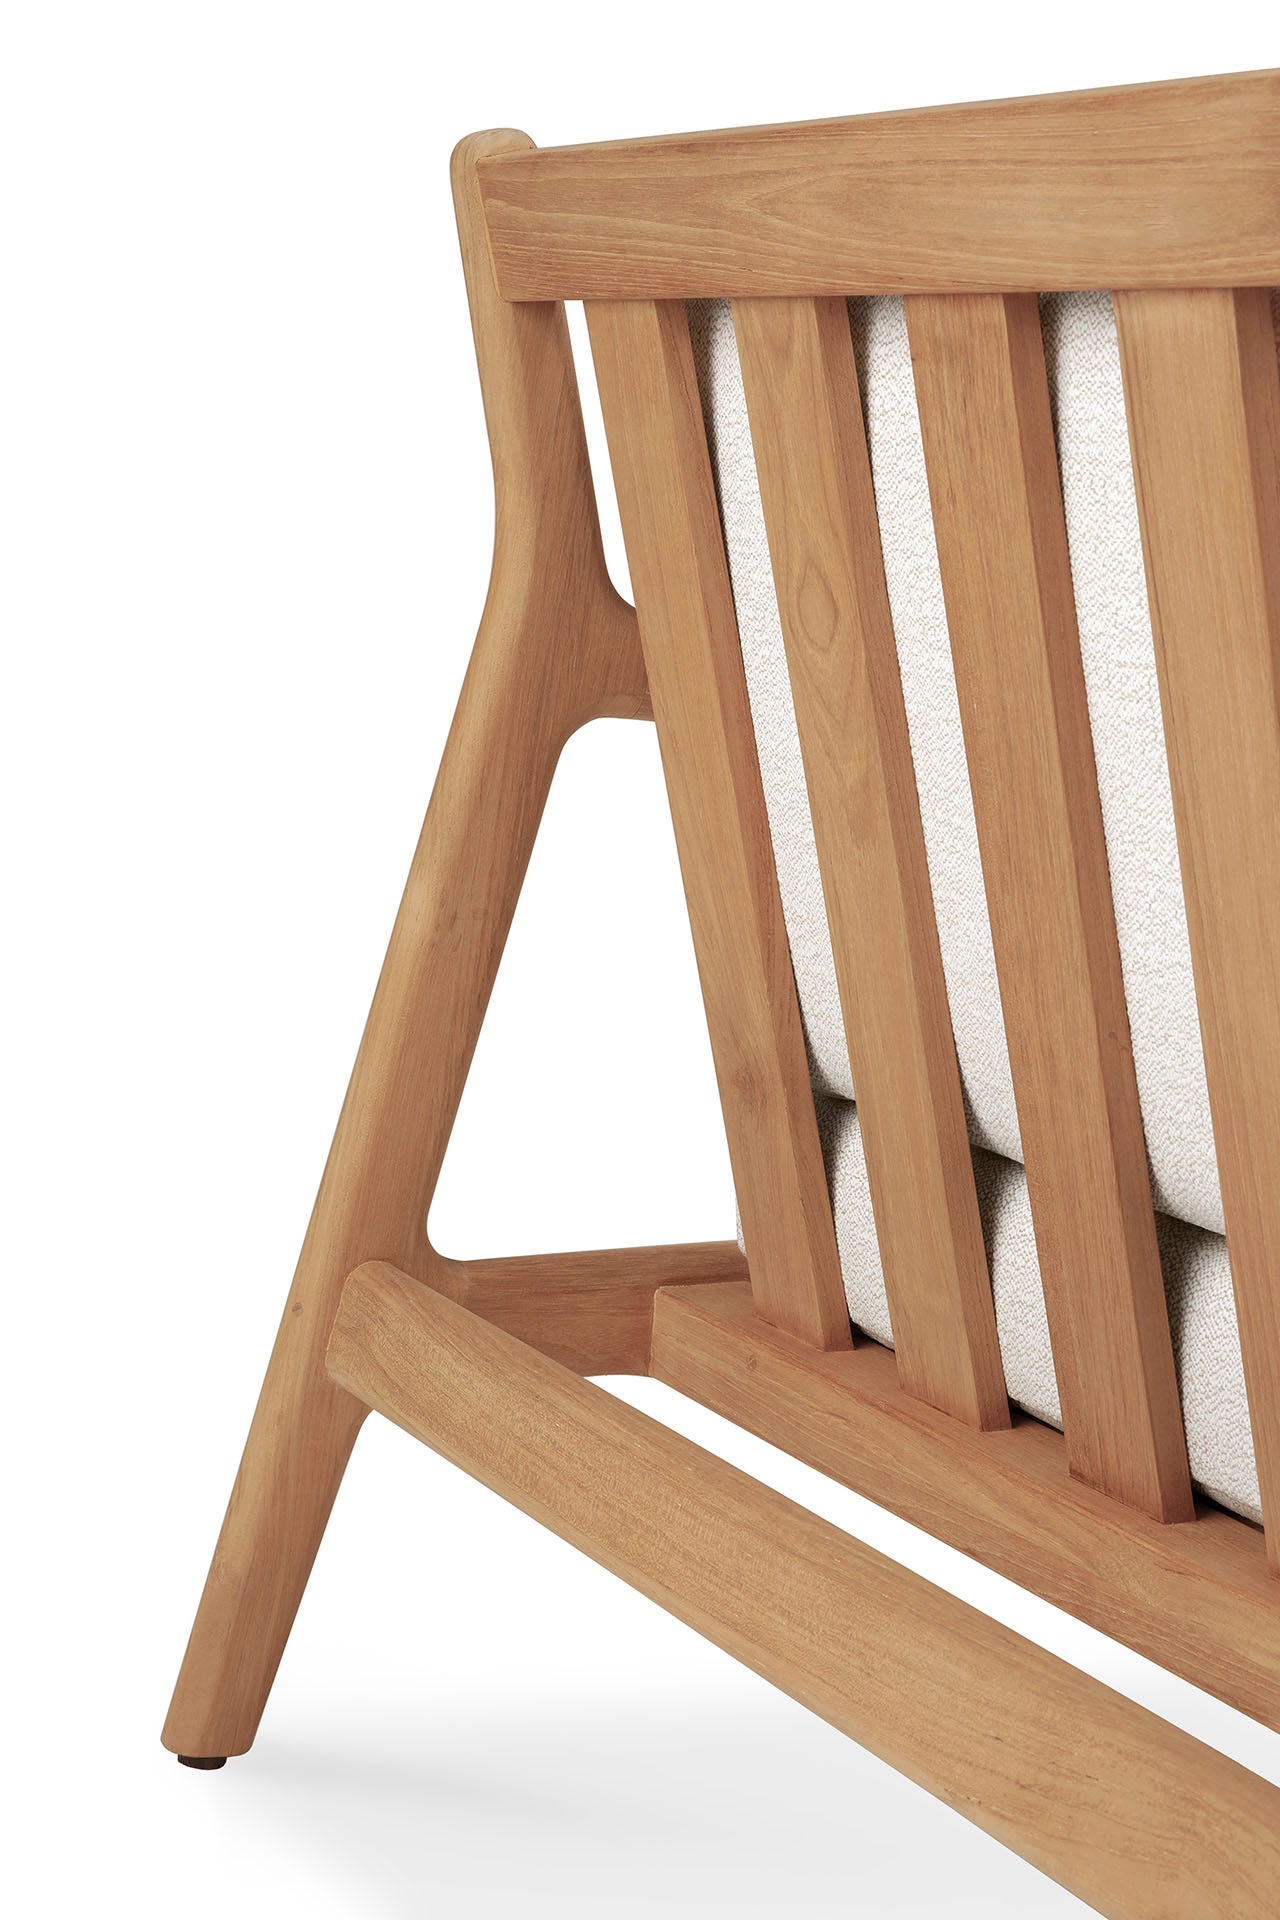 比利時原裝進口實木傢俬 - 戶外系列 - Jack系列雙座位柚木梳化